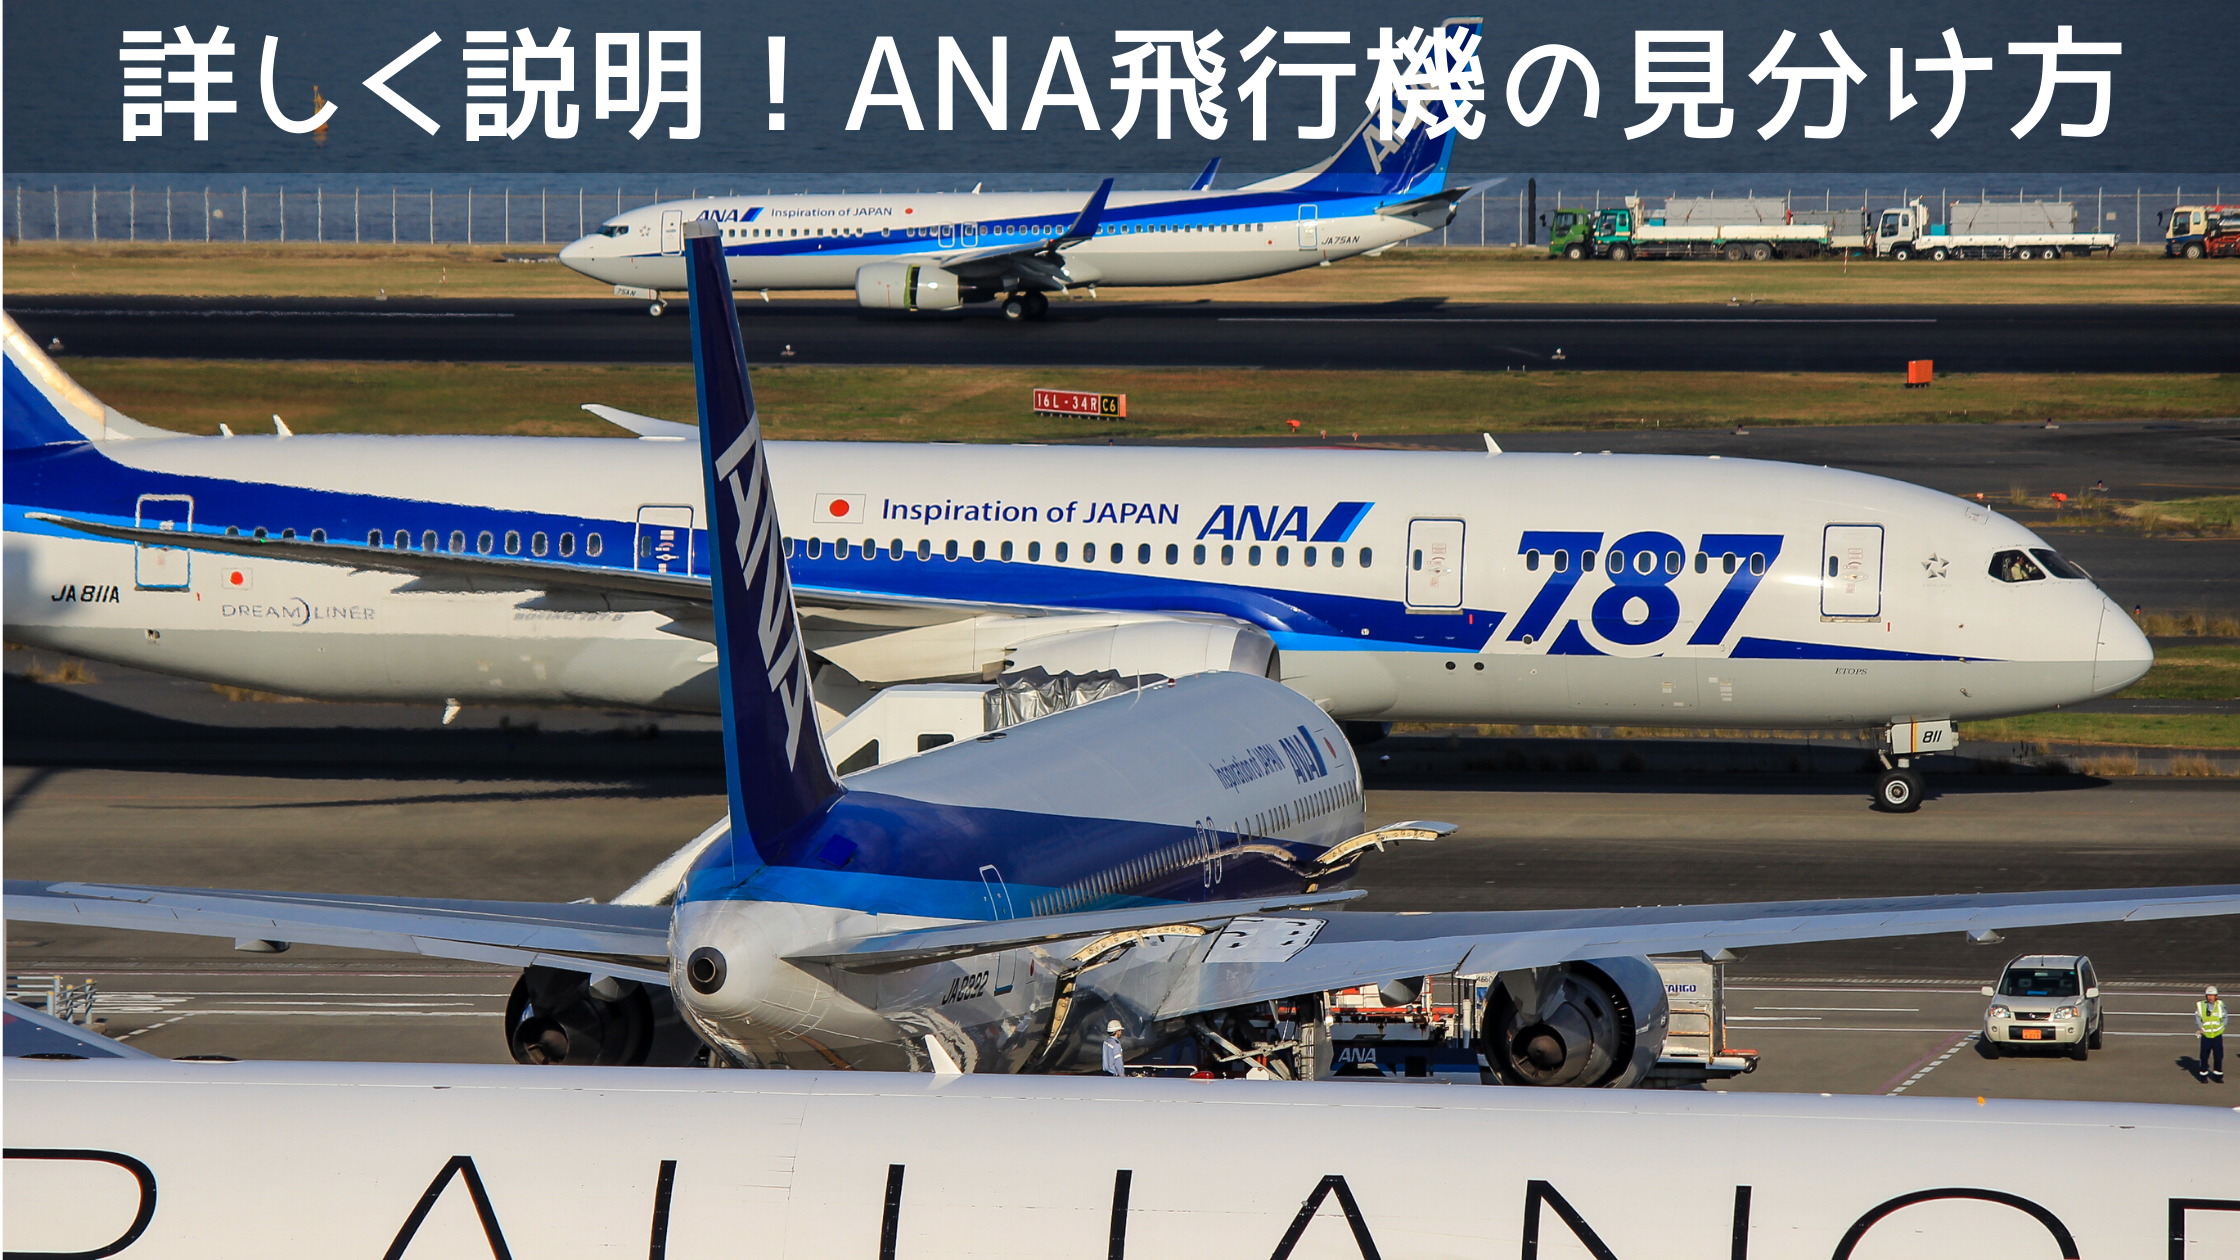 21年最新版 飛行機の見分け方を詳しく説明 全日本空輸 Ana 全13機種の運用機種で比較